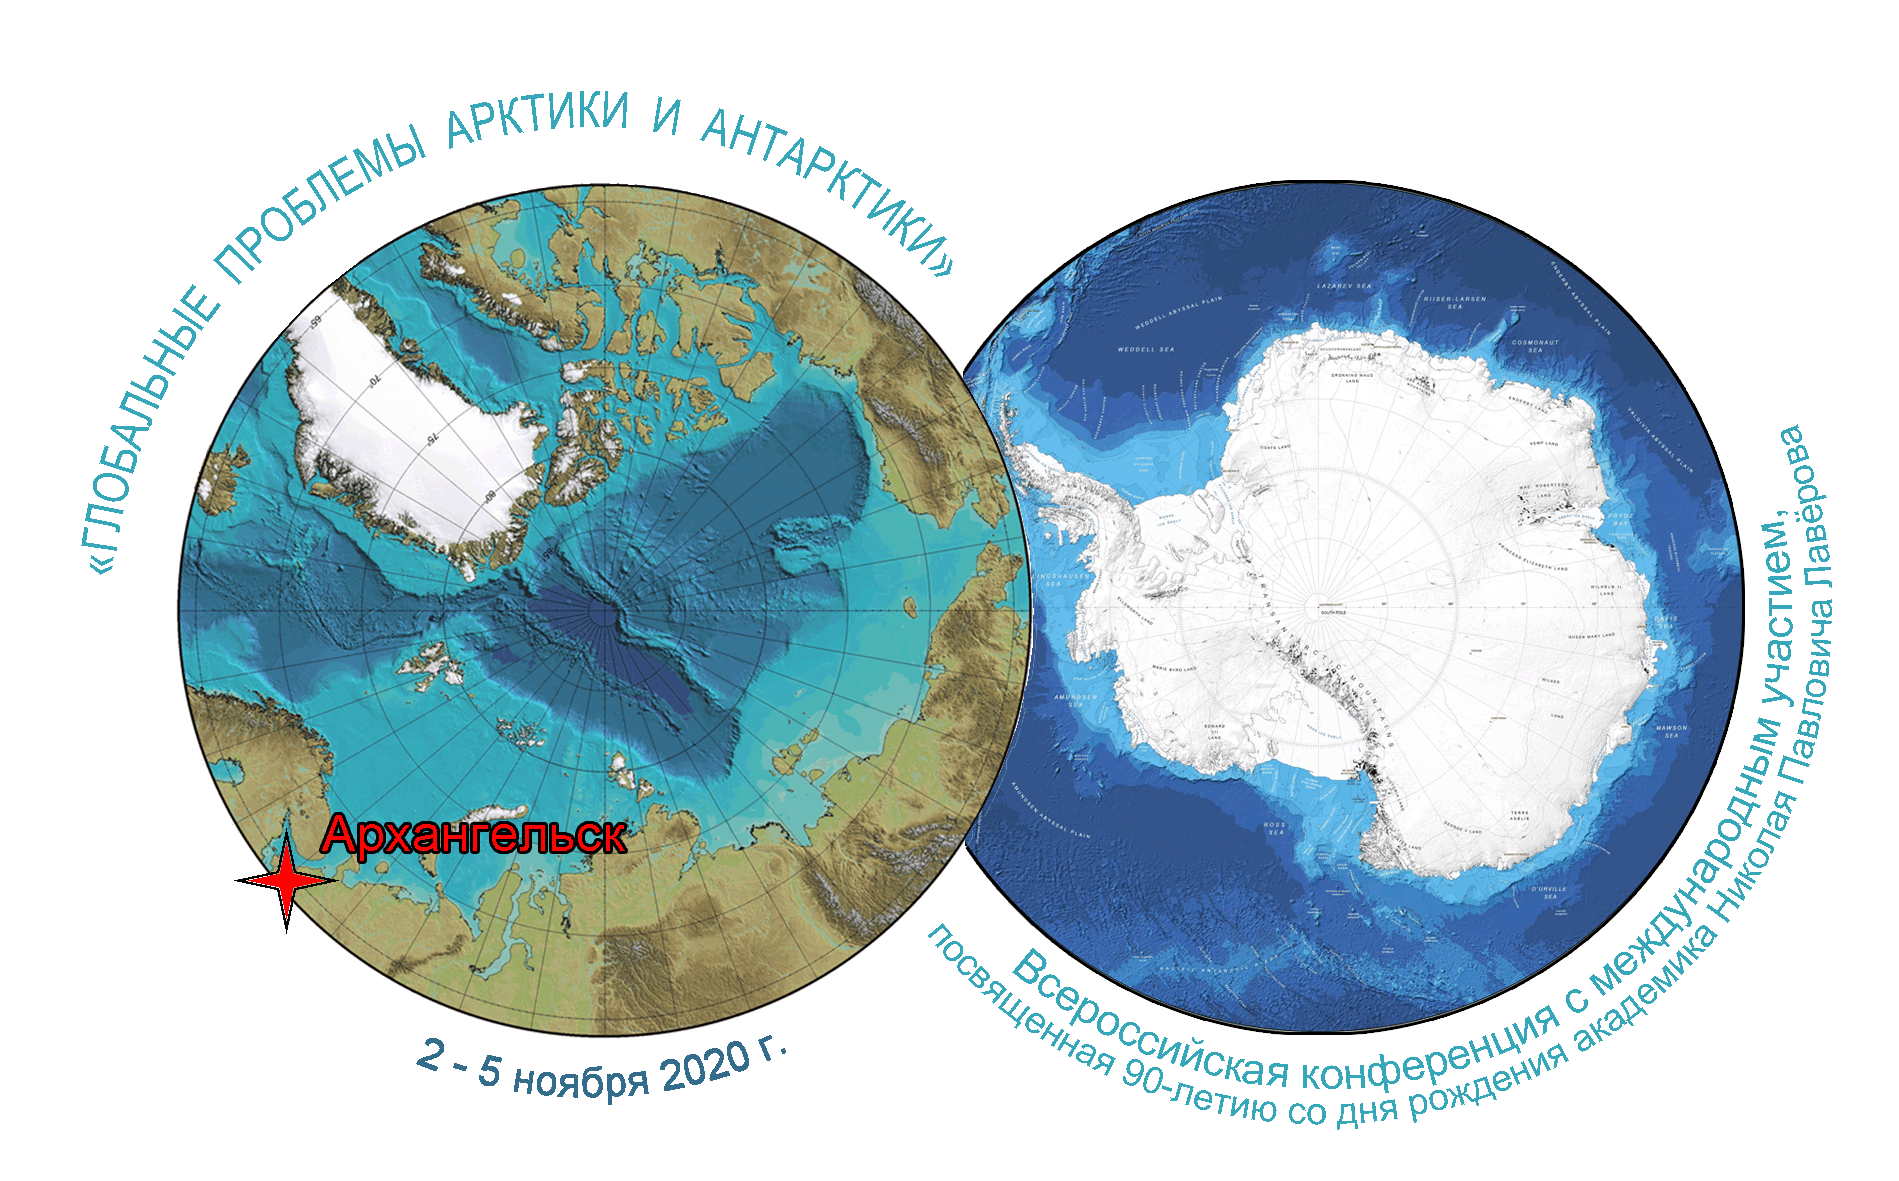 Арктика Антарктика Антарктида. Антарктида Арктика Антарктика разница. Арктика и Антарктида на карте. Северный полюс, Арктика и Южный полюс, Антарктида. Материк антарктида находится в полушариях